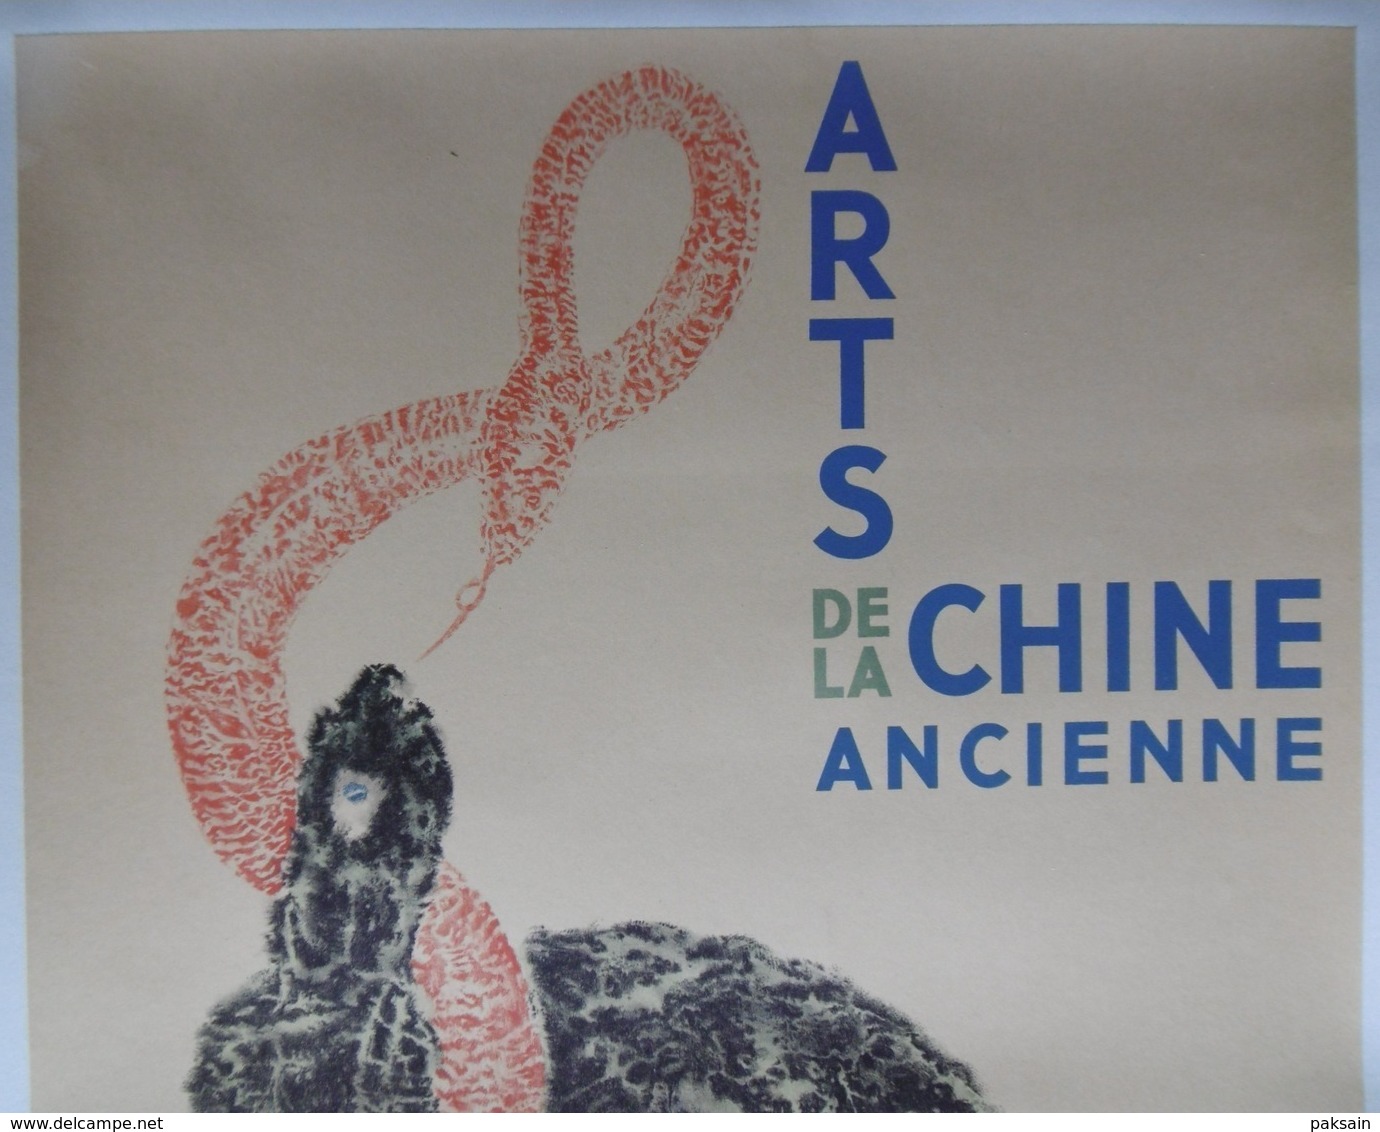 Arts De La Chine Ancienne Affiche Originale 1937 Paris A L'Orangerie Des Tuileries China Chinese Poster - Manifesti